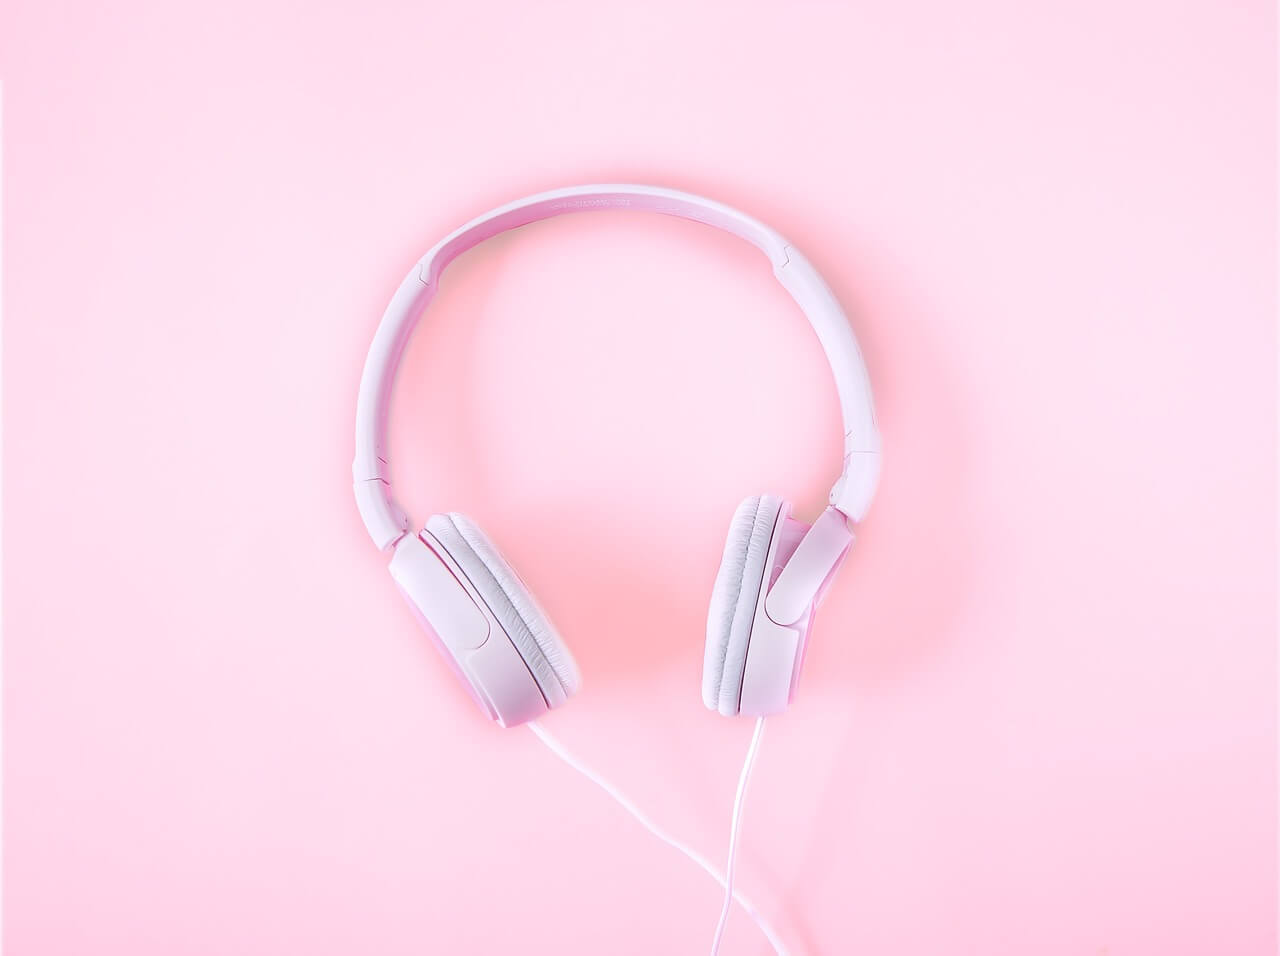 노래-음악을-듣기-위한-헤드폰이-핑크색-바닥에-놓여진-상태